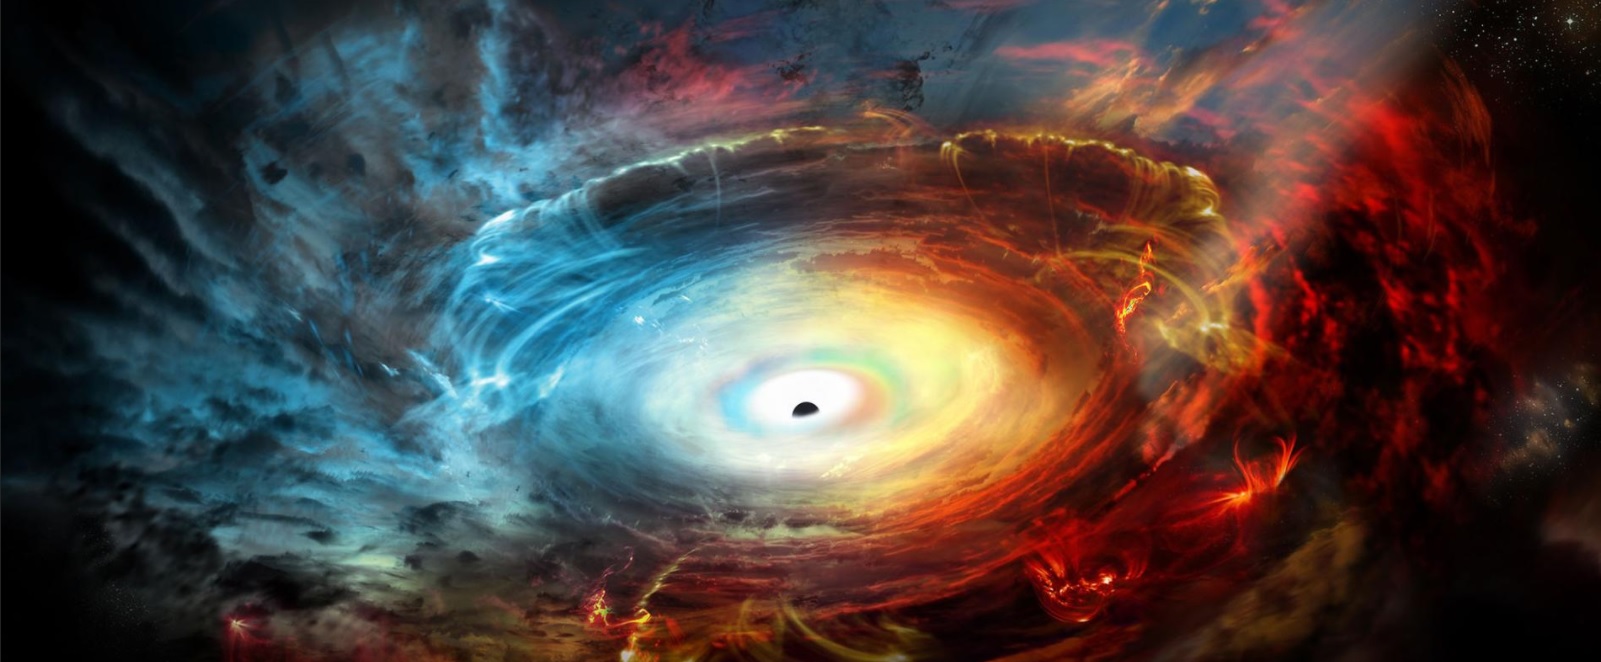 Imagen de un agujero negro publicada por National Geografic; científicos dicen haber obtenido una fotografía de ese fenómeno astrofísico (nationalgeographic.com)